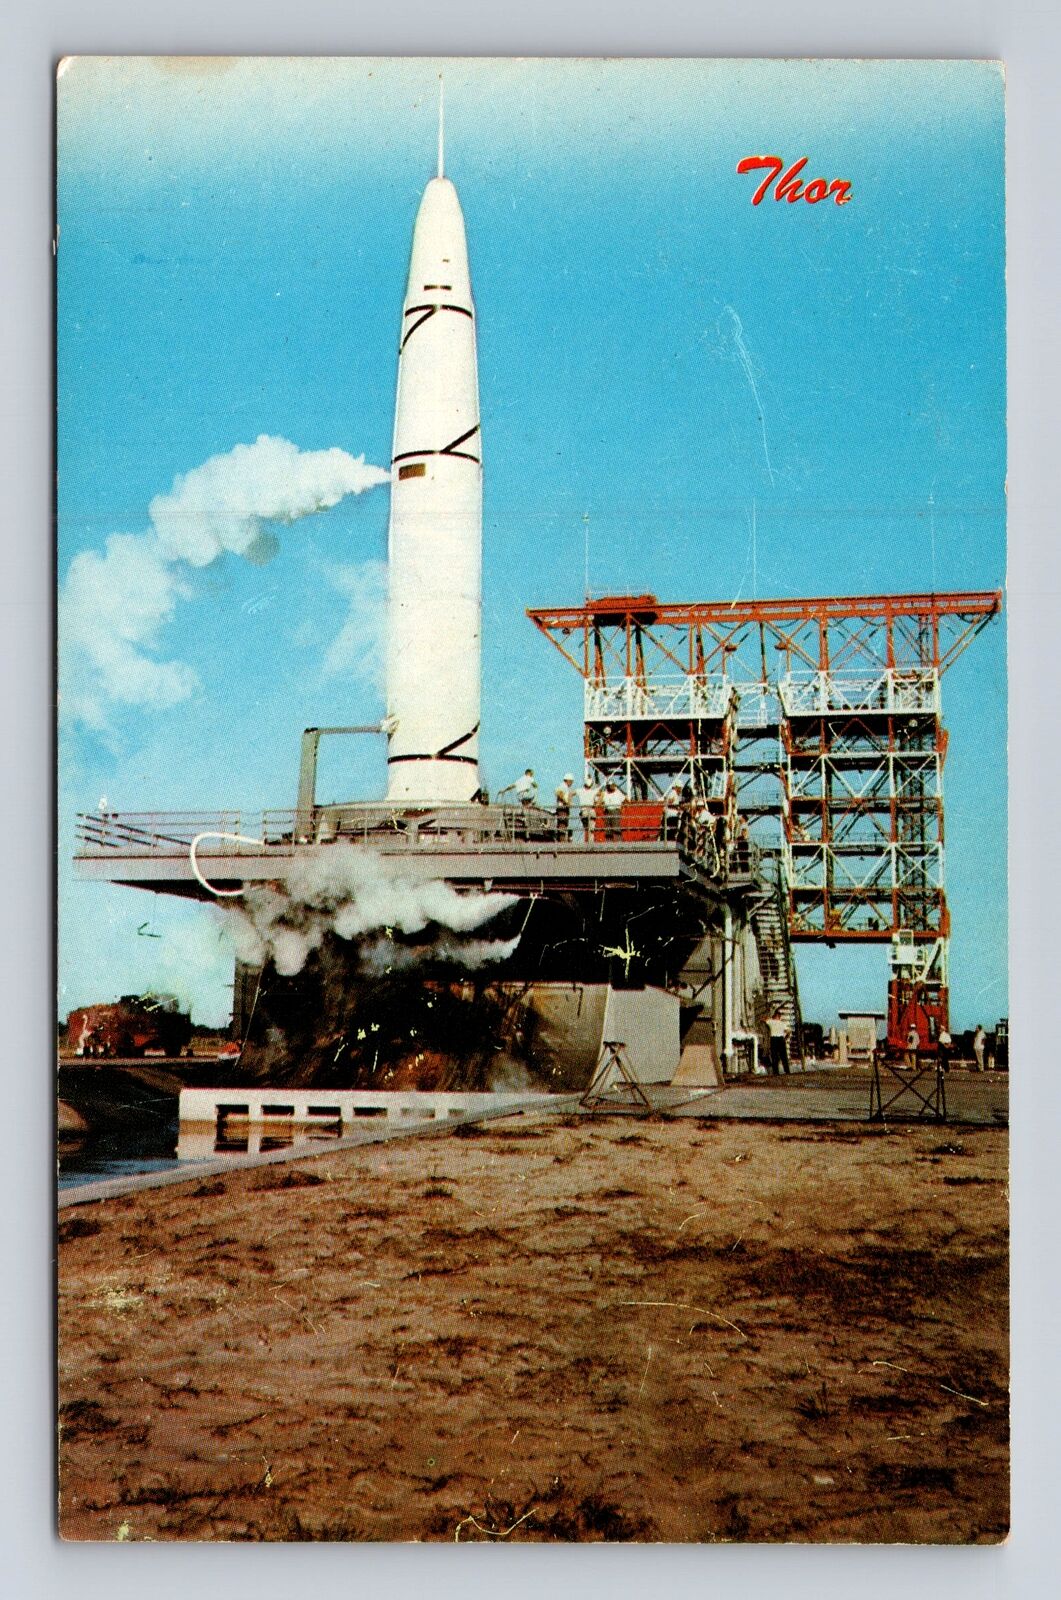 Patrick Air Force Base FL-Florida, Air Force Missile Test, Vintage Postcard